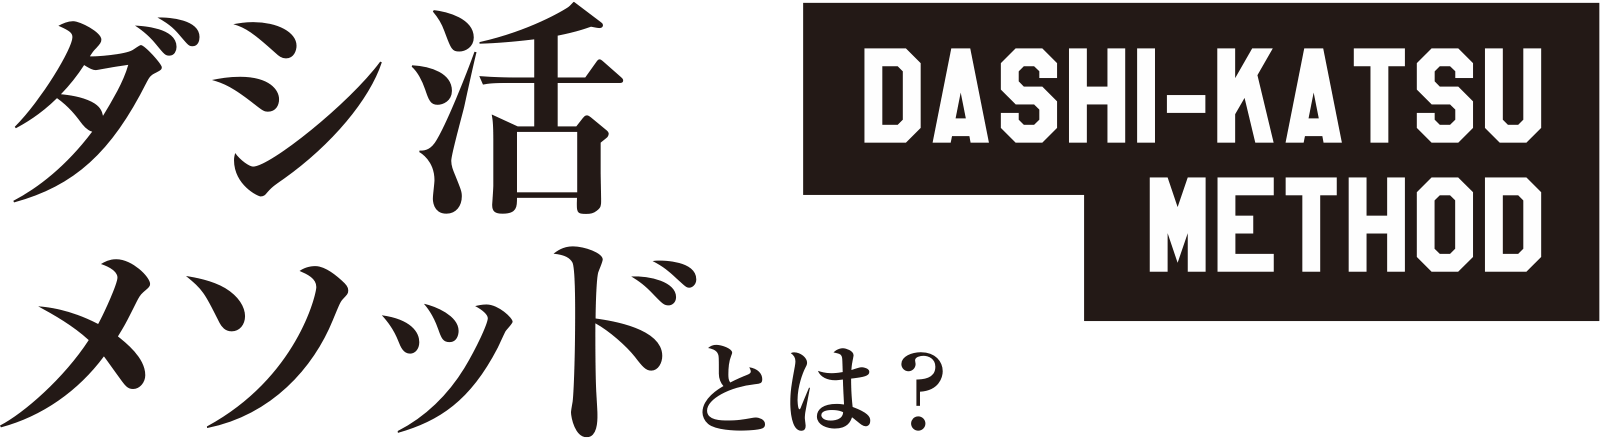 Dashi Katsu